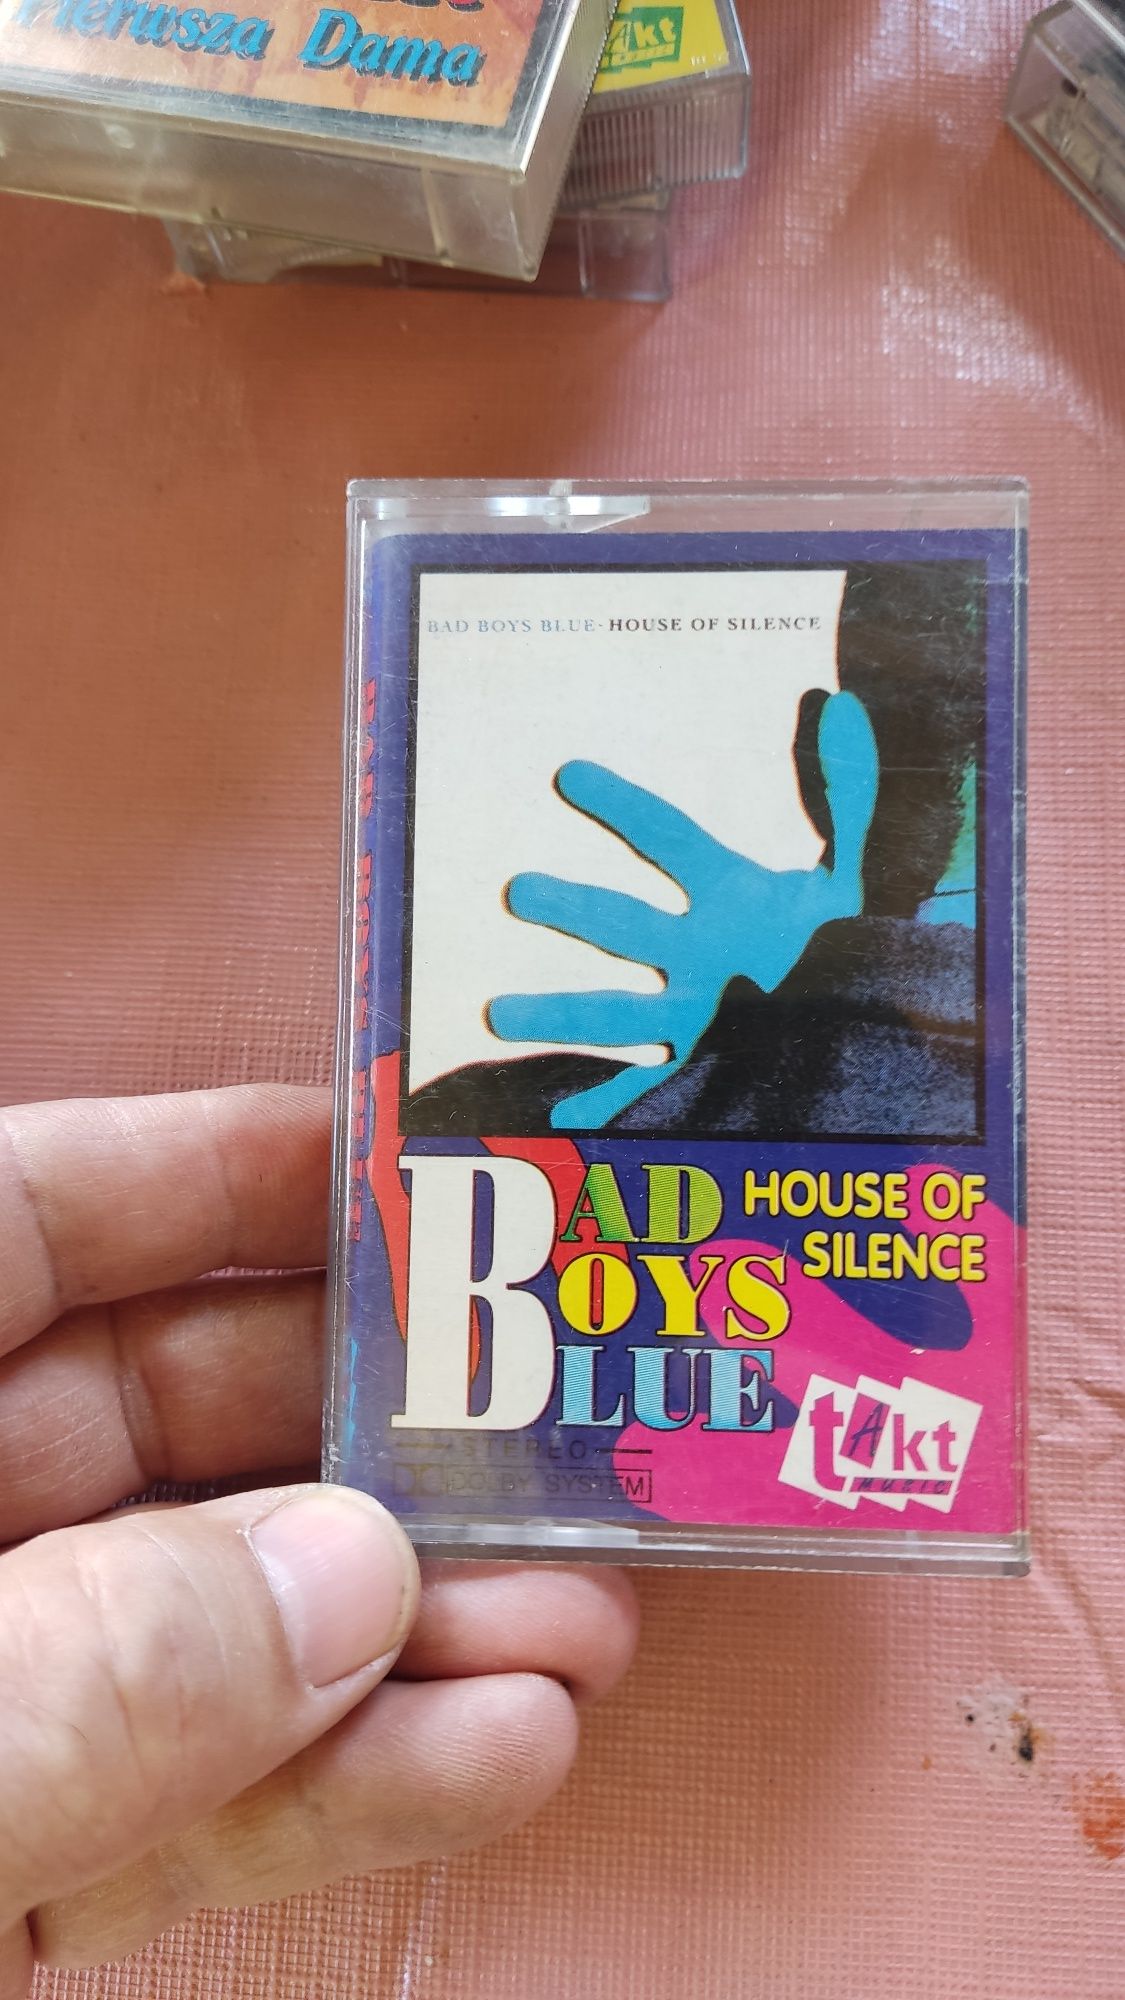 Bad Boys blue housr od silence kaseta audio